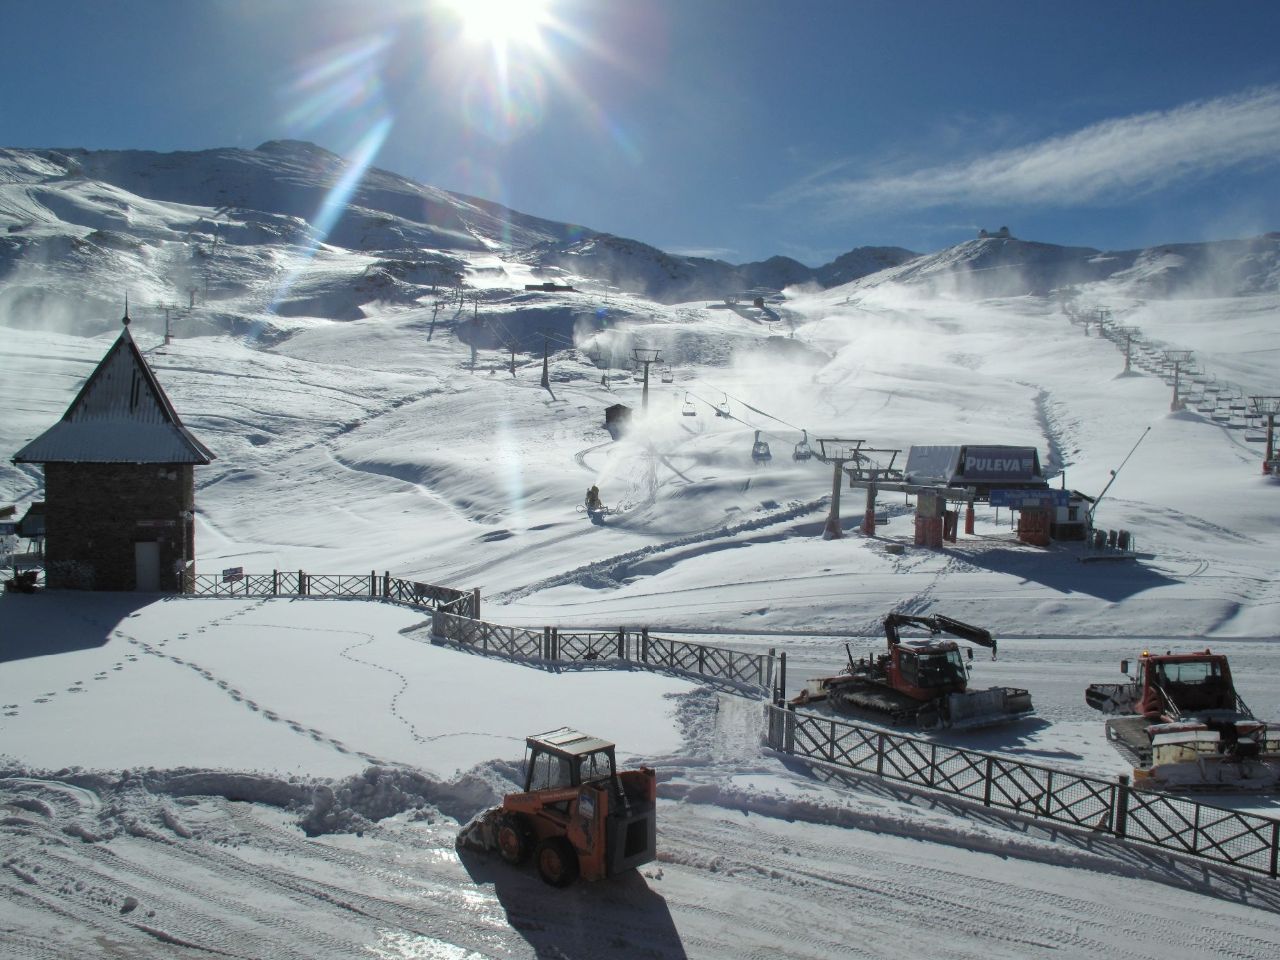 escuela de esqui en sierra nevada